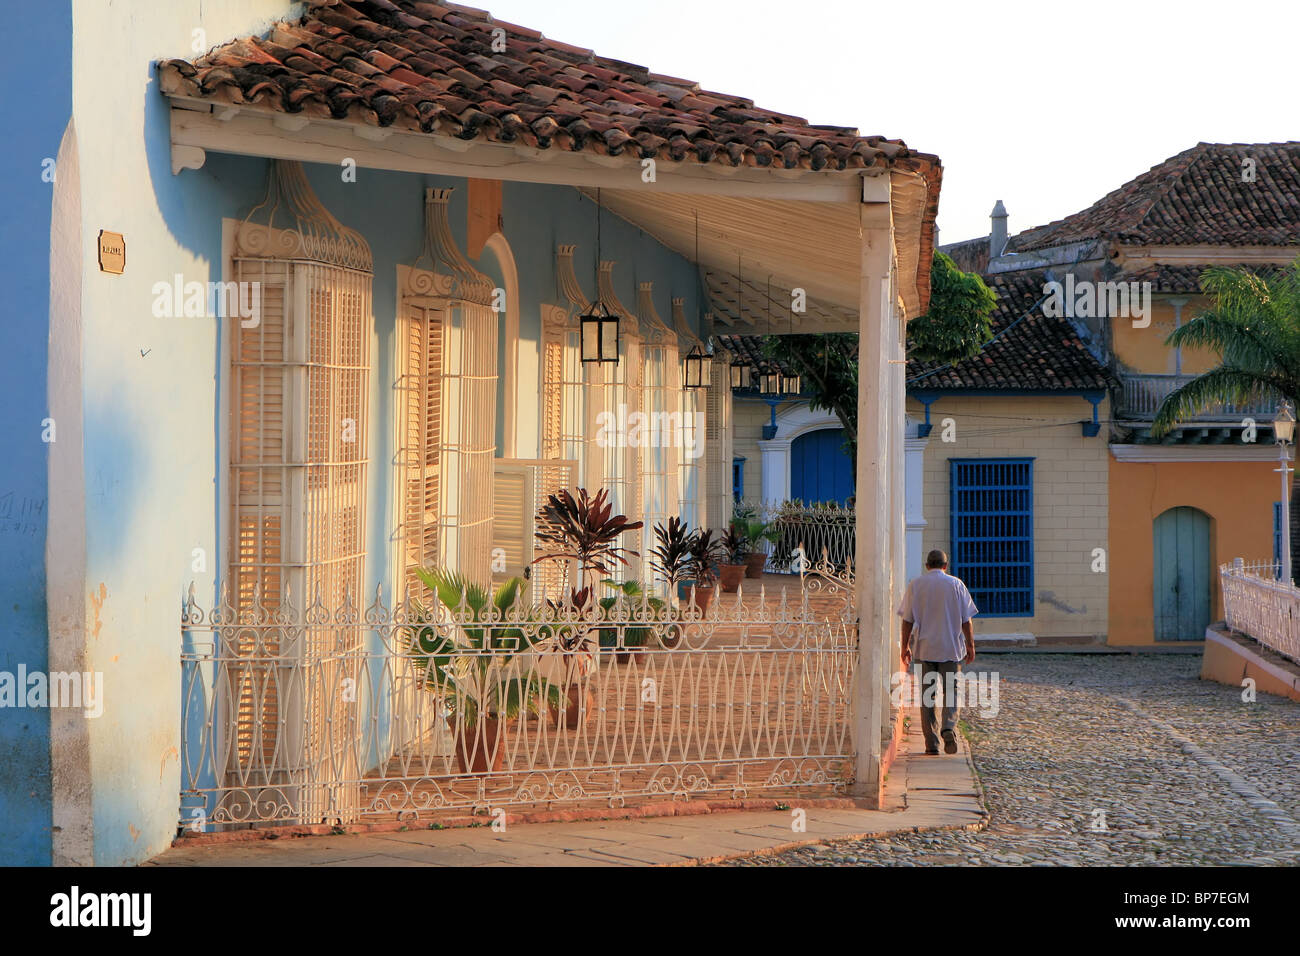 Maison de style colonial, Trinidad, Cuba Banque D'Images